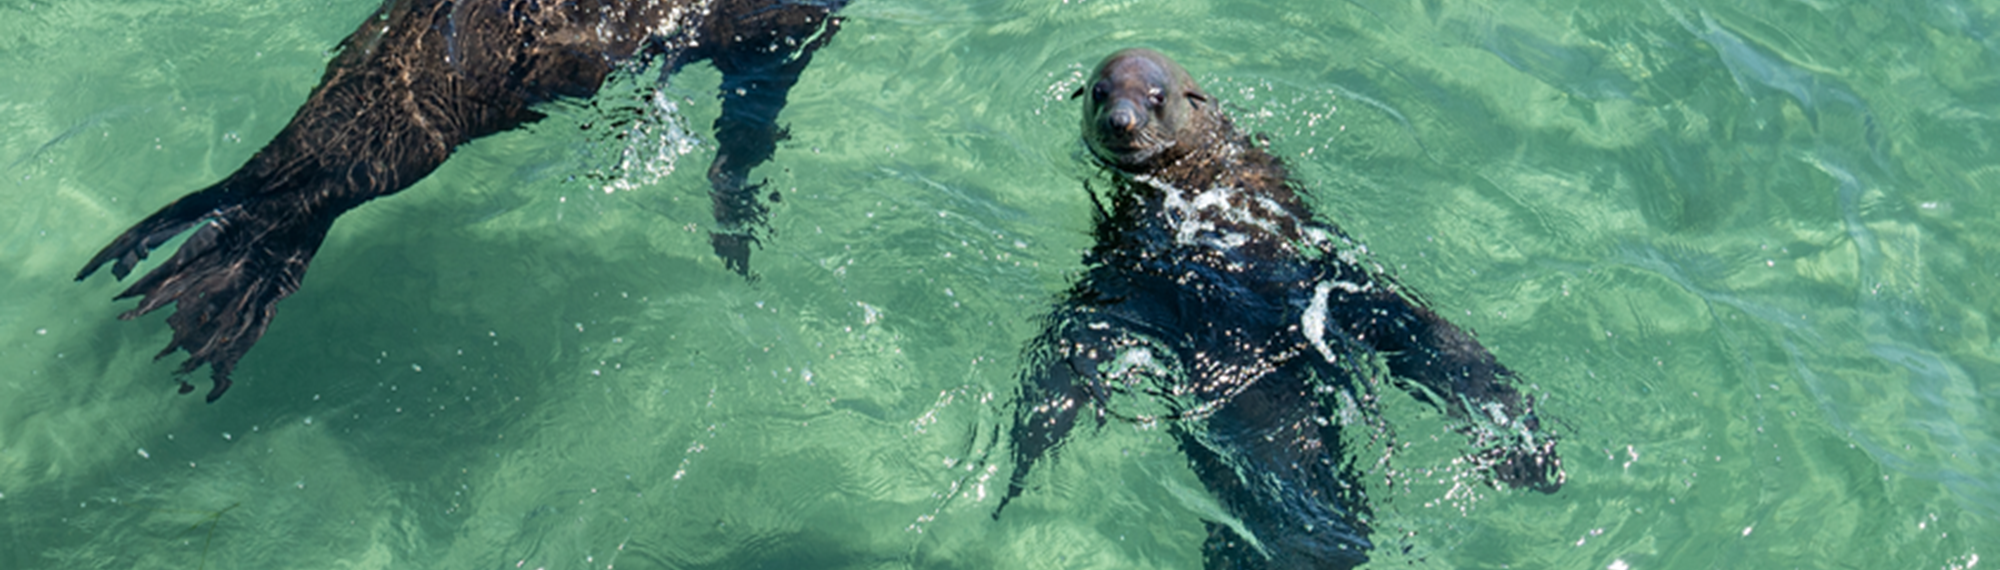 Three Australian Fur Seals, swimming in aqua-floored, shallow water.